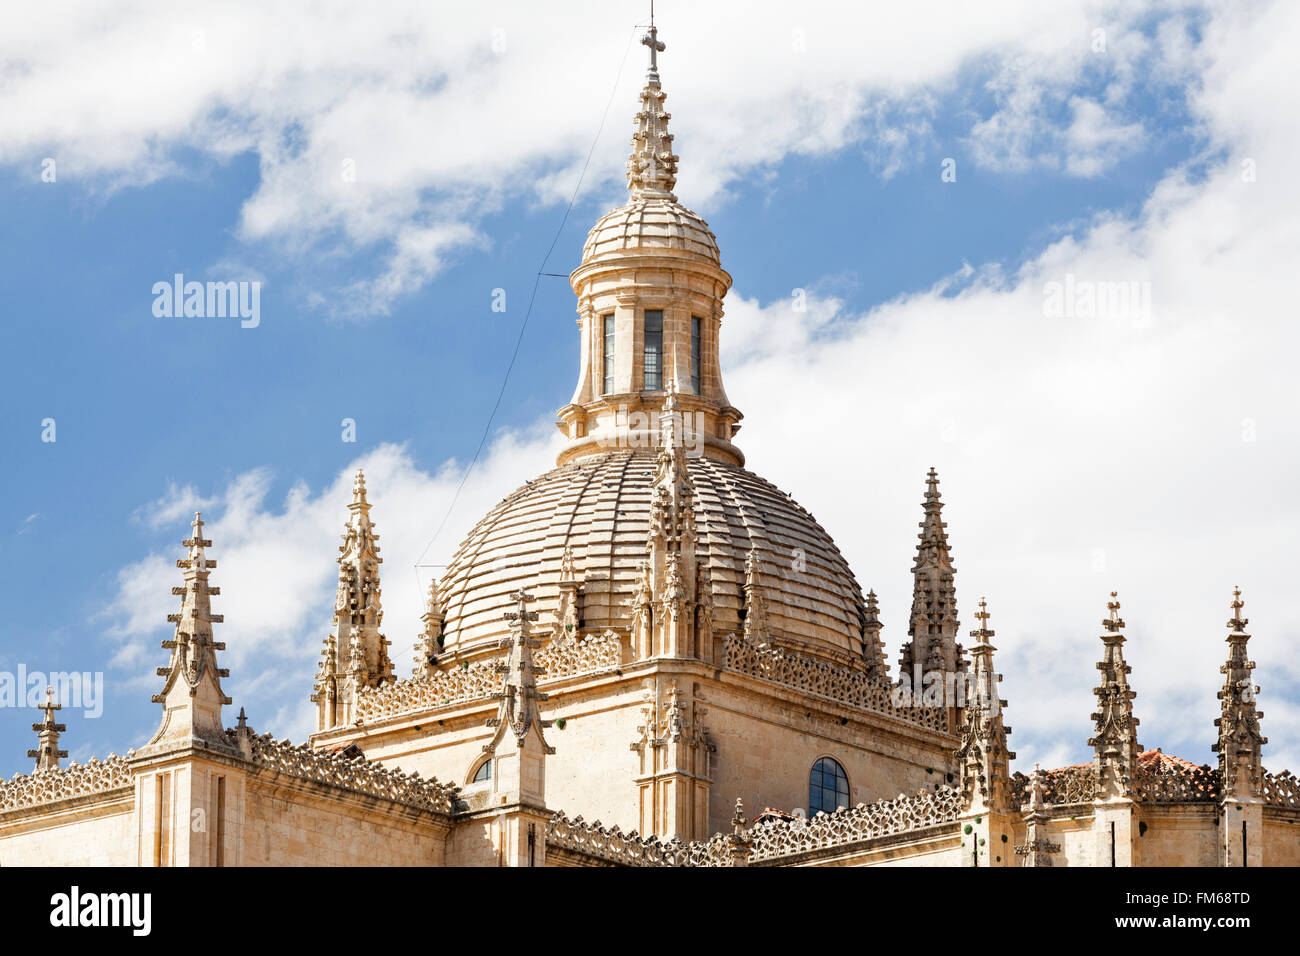 Eine Außenansicht einer religiösen Gebäude, die Kuppel der Kathedrale von Segovia, Spanien. Stockfoto